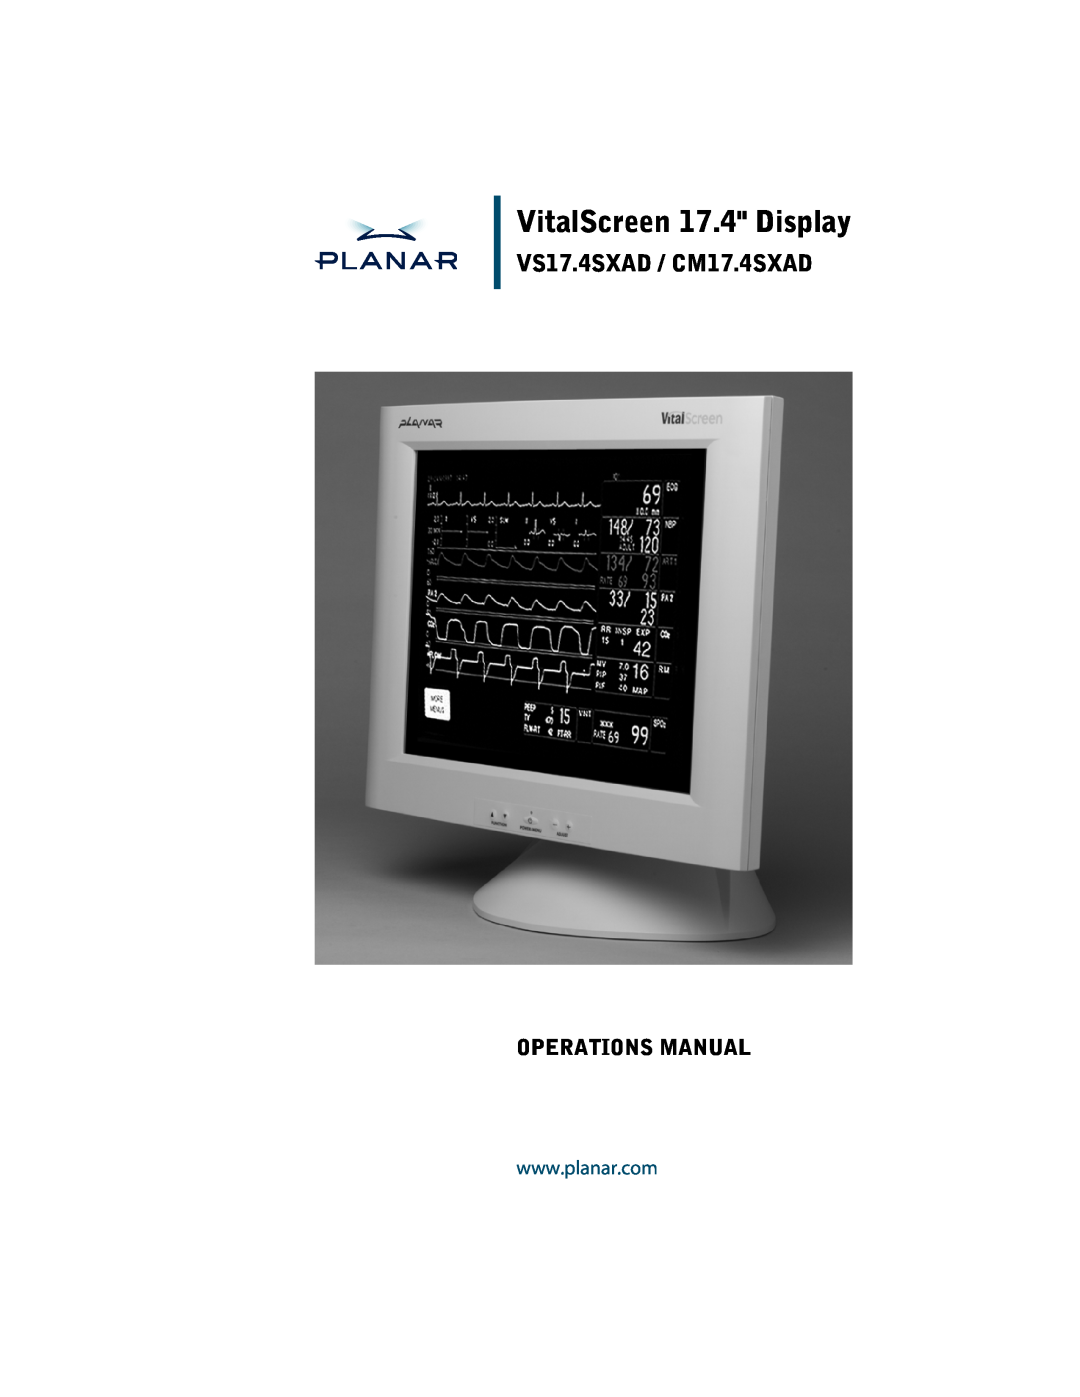 Planar manual VitalScreen 17.4 Display, VS17.4SXAD / CM17.4SXAD, Operations Manual 